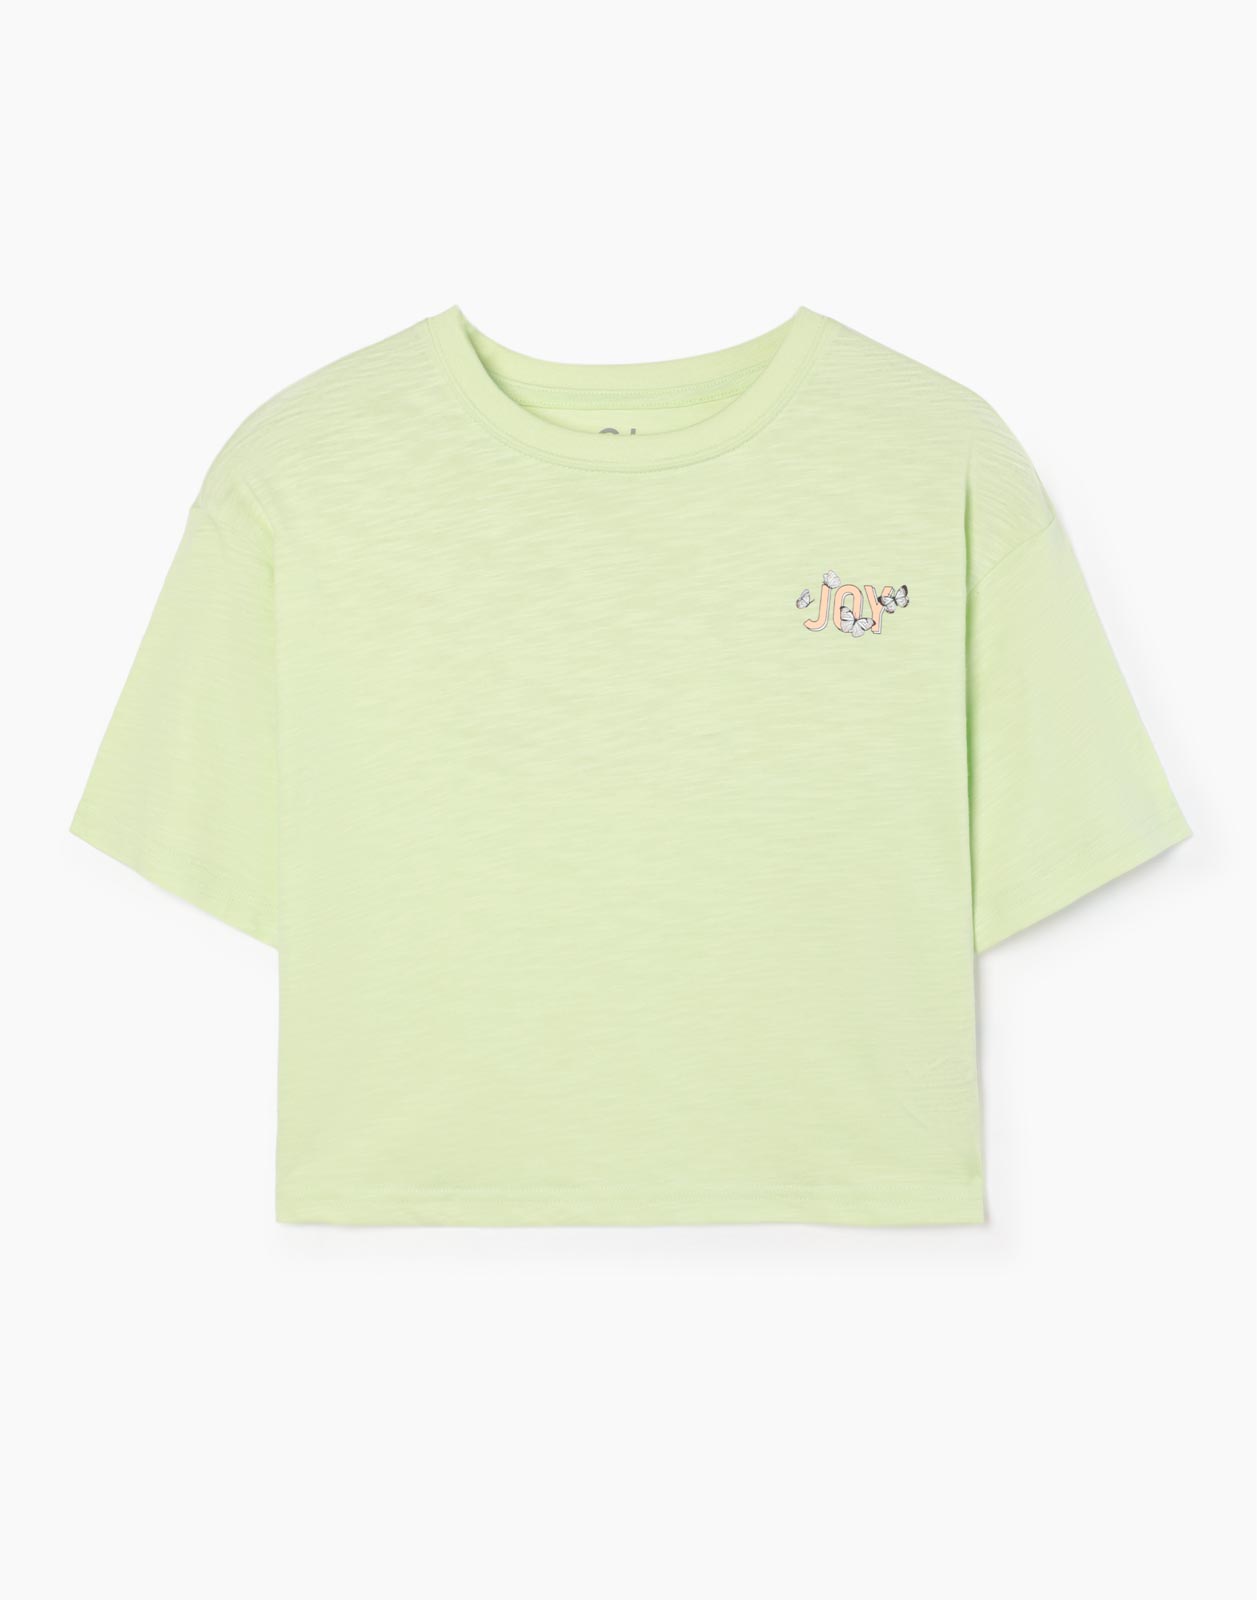 Салатовая укороченная футболка с принтом для девочки 12-14л/158-164